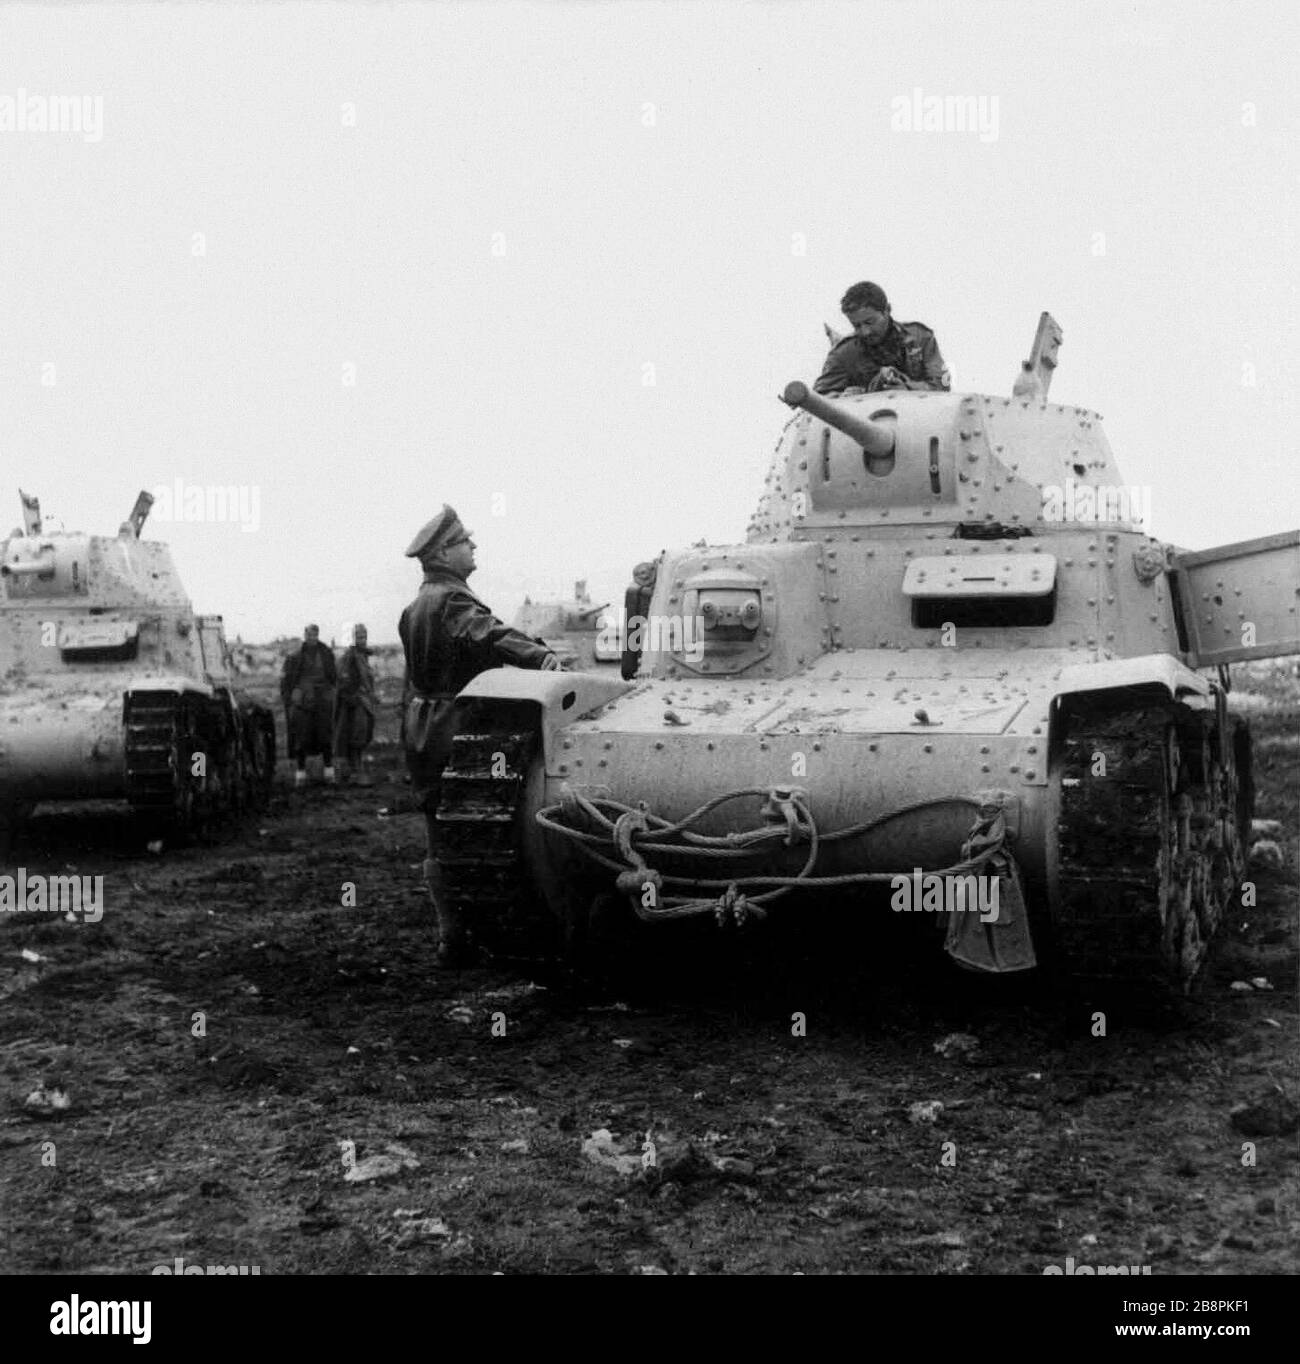 "Inglés: italiano M13/40 del tanque del ariete división blindada en otoño de 1941; el 17 de octubre de 1941; http://dati.acs.beniculturali.it/SecondaGuerraMondiale/; desconocida; ' Foto de stock